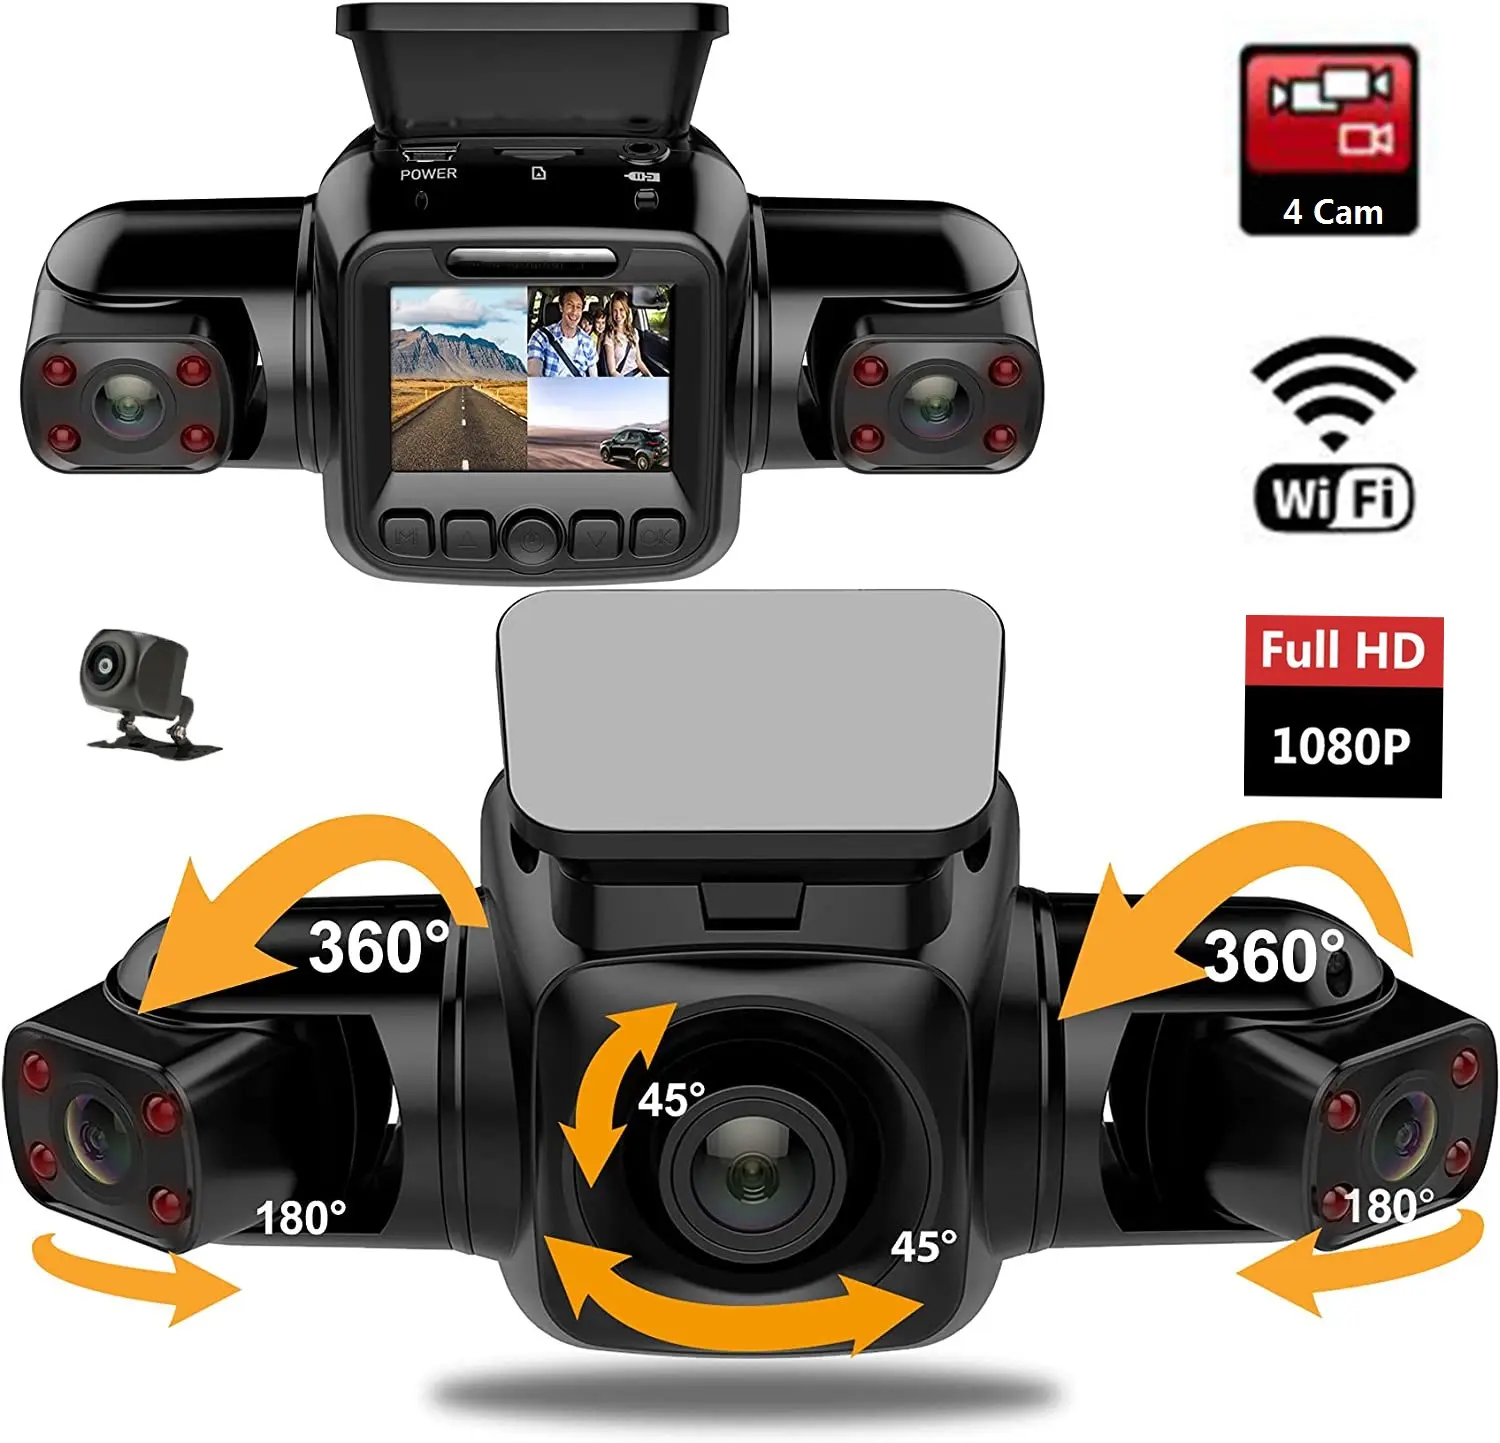 Câmera 4 1080p + 1080p + 1080p para carro, dvr wi-fi gps, logger, visão noturna, lente dupla, com lente de visão traseira, 3 canais